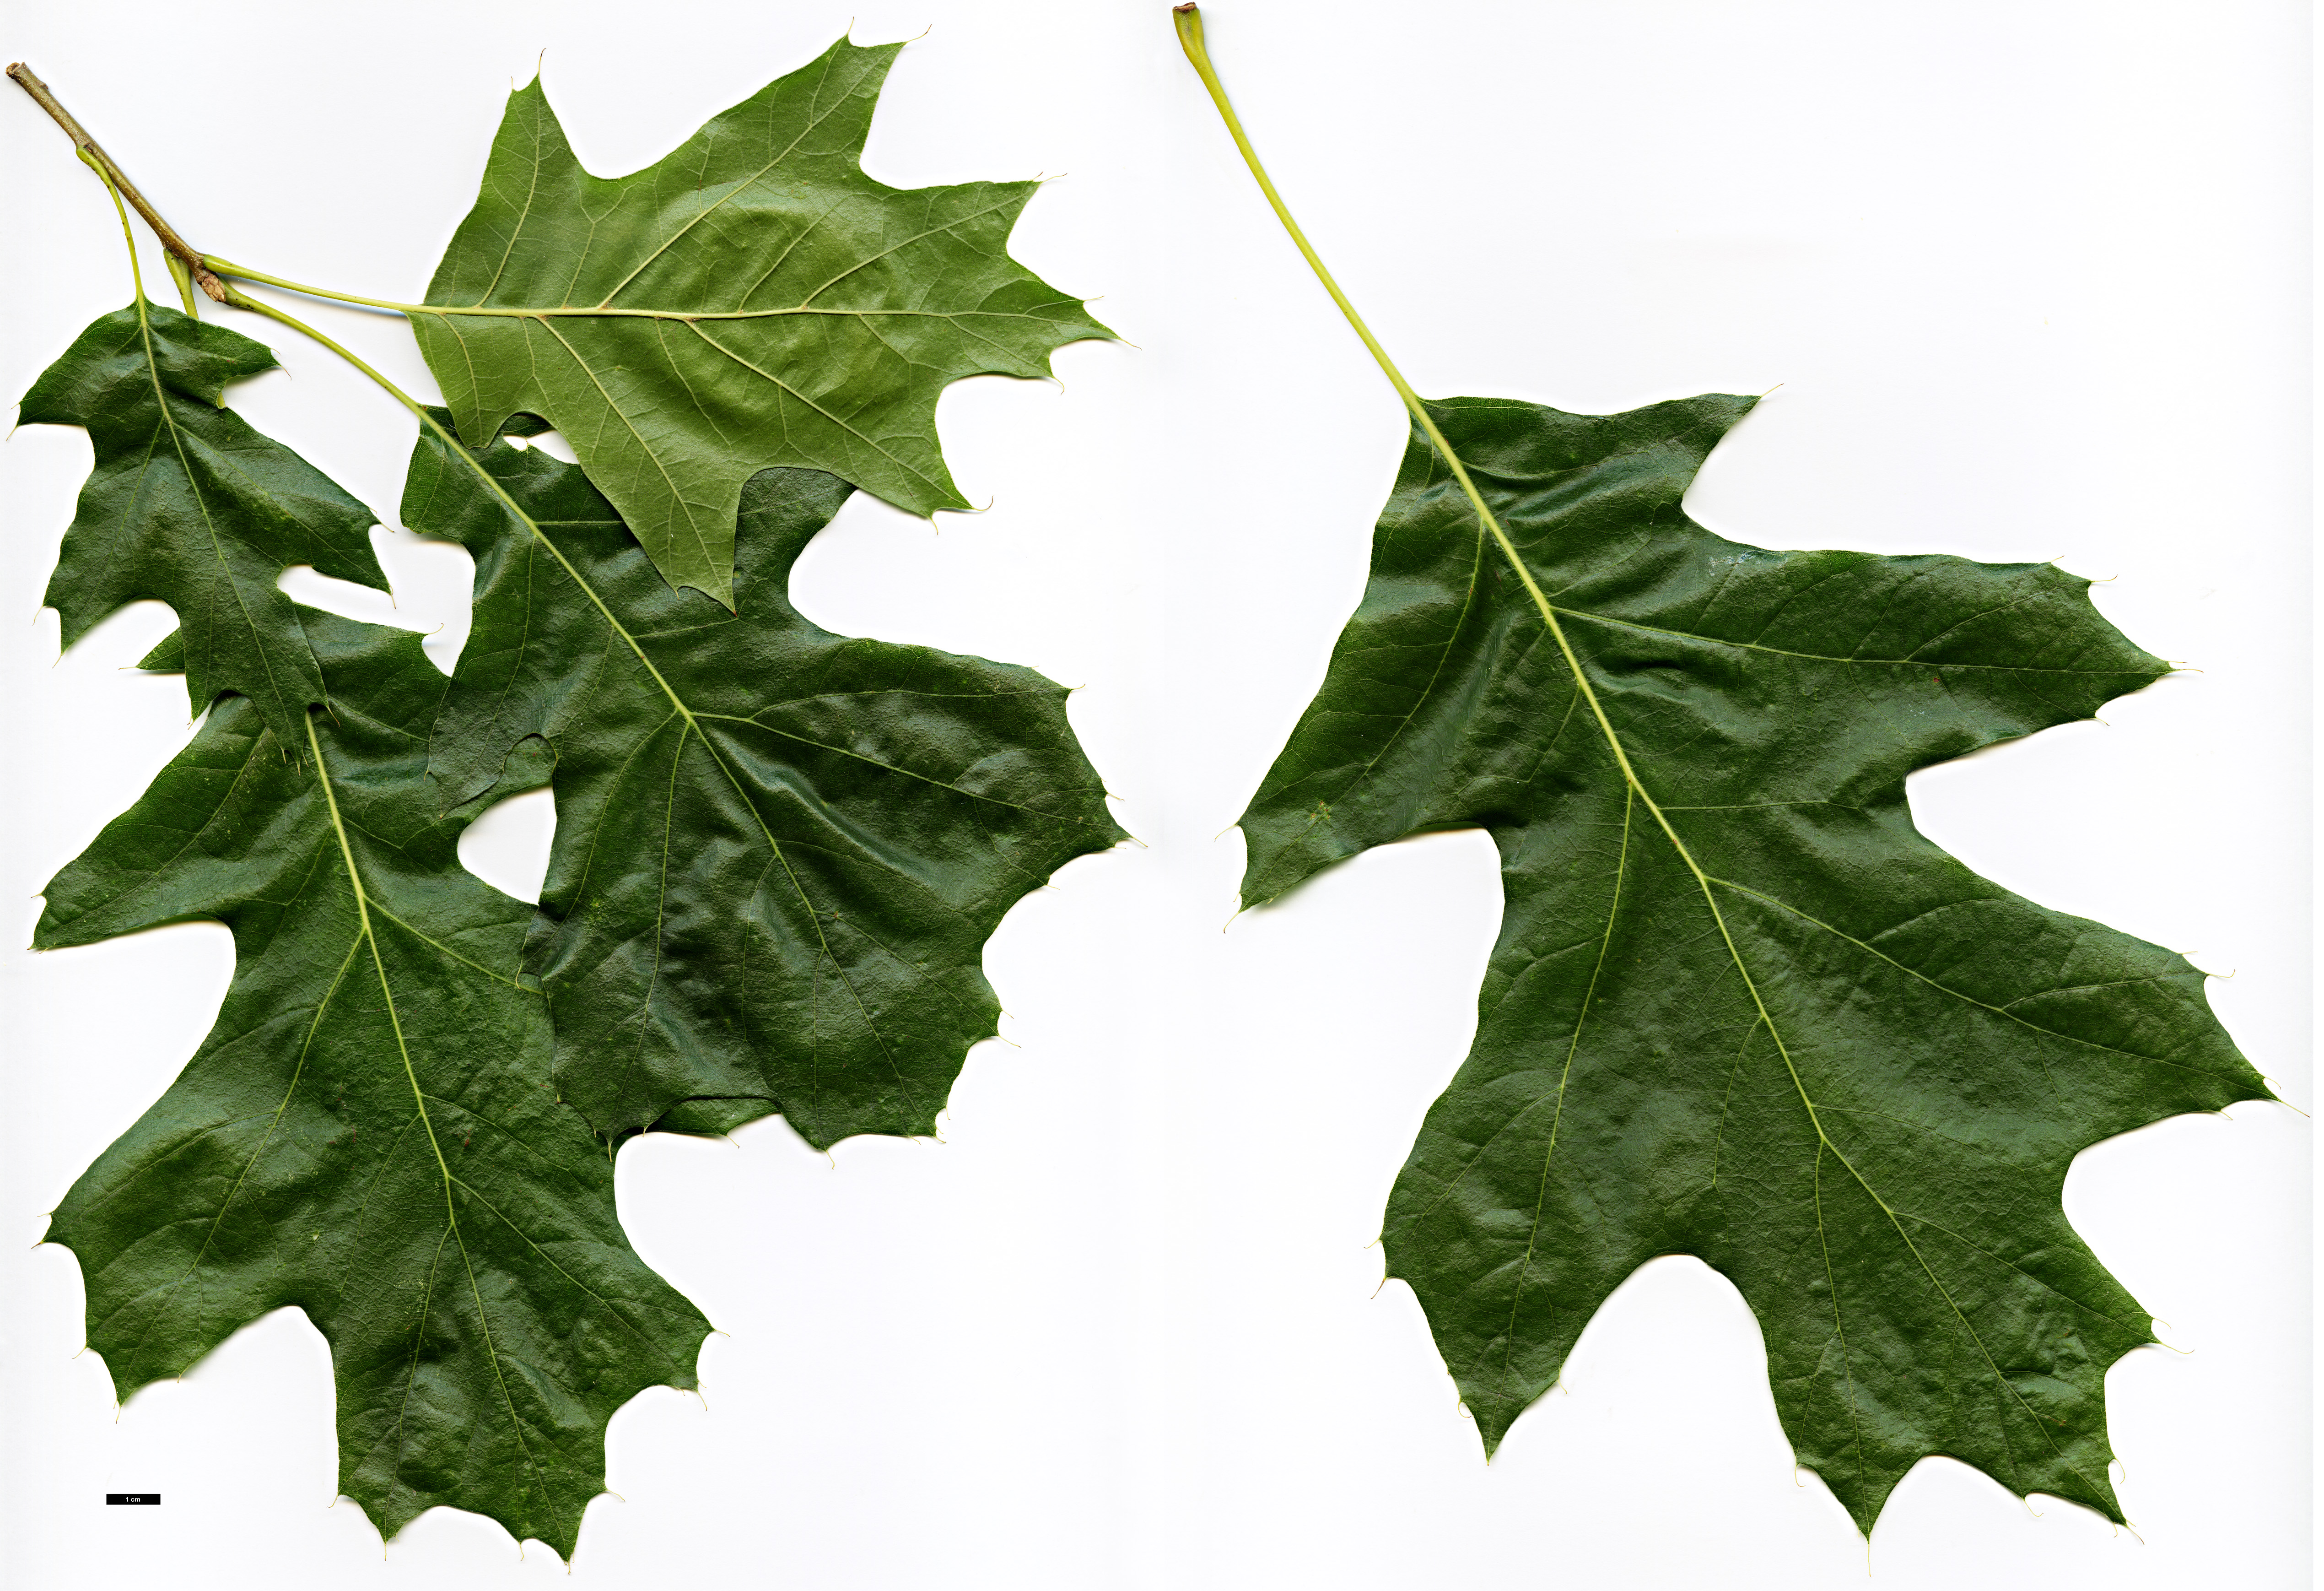 High resolution image: Family: Fagaceae - Genus: Quercus - Taxon: velutina - SpeciesSub: 'Albertsii'